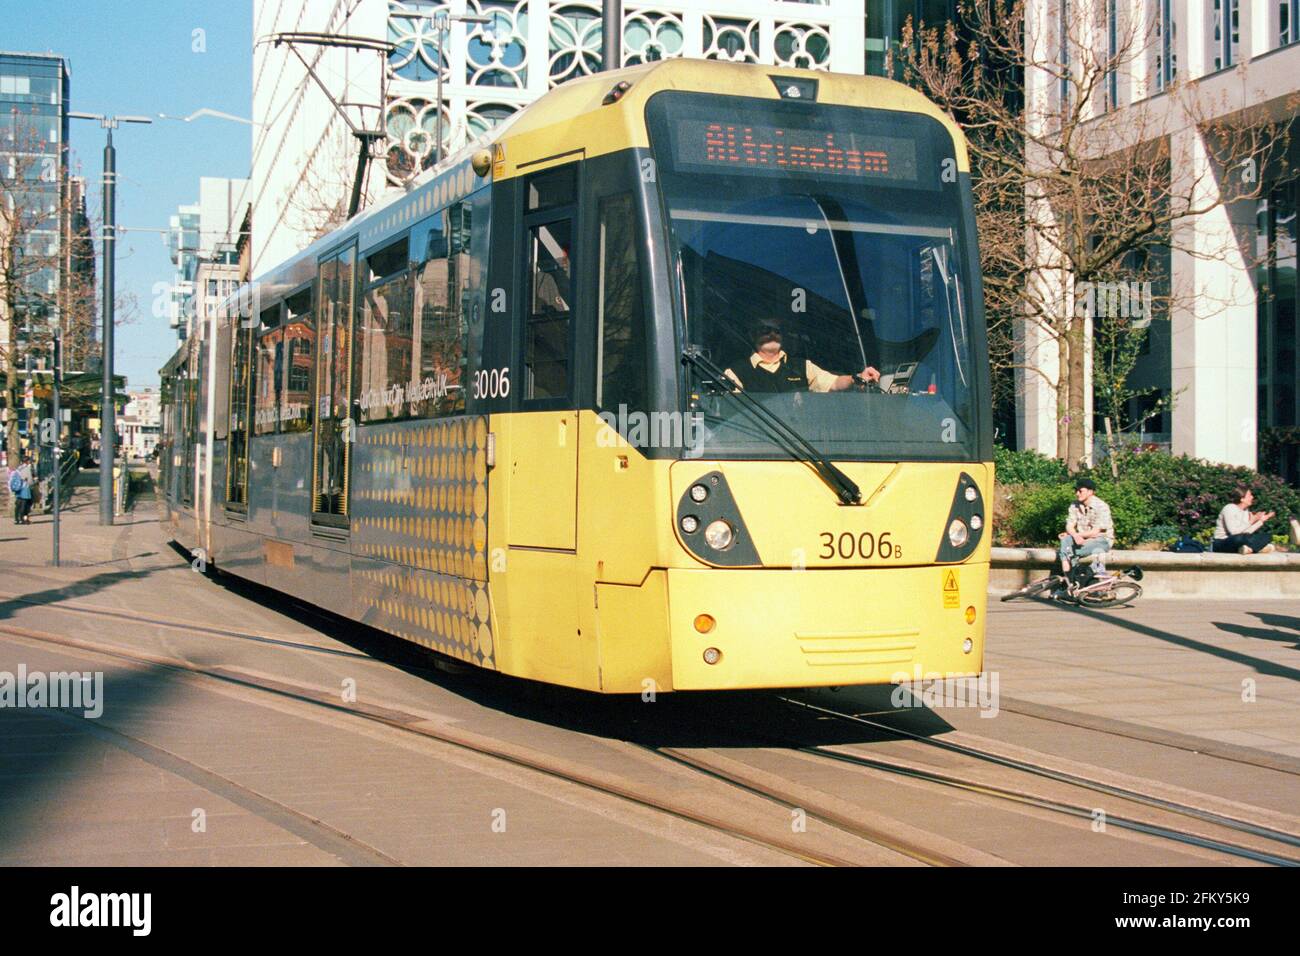 Manchester, Großbritannien - 3. April 2021: Eine Metrolink-Straßenbahn von Manchester (Bombardier M5000, Nr. 3006) am Petersplatz Stockfoto